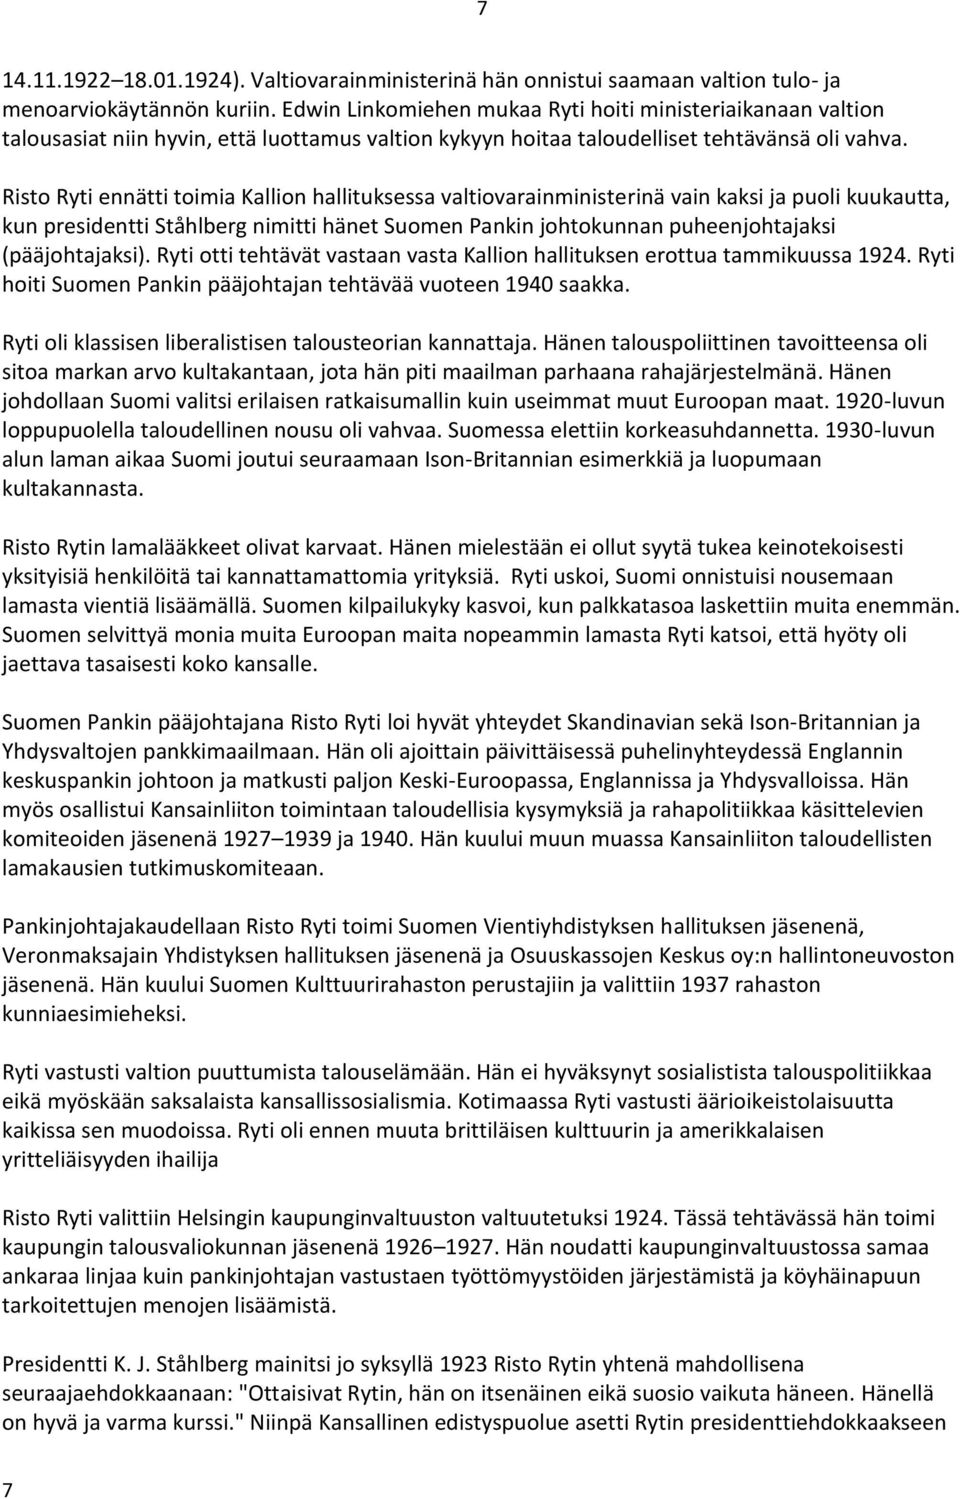 Risto Ryti ennätti toimia Kallion hallituksessa valtiovarainministerinä vain kaksi ja puoli kuukautta, kun presidentti Ståhlberg nimitti hänet Suomen Pankin johtokunnan puheenjohtajaksi